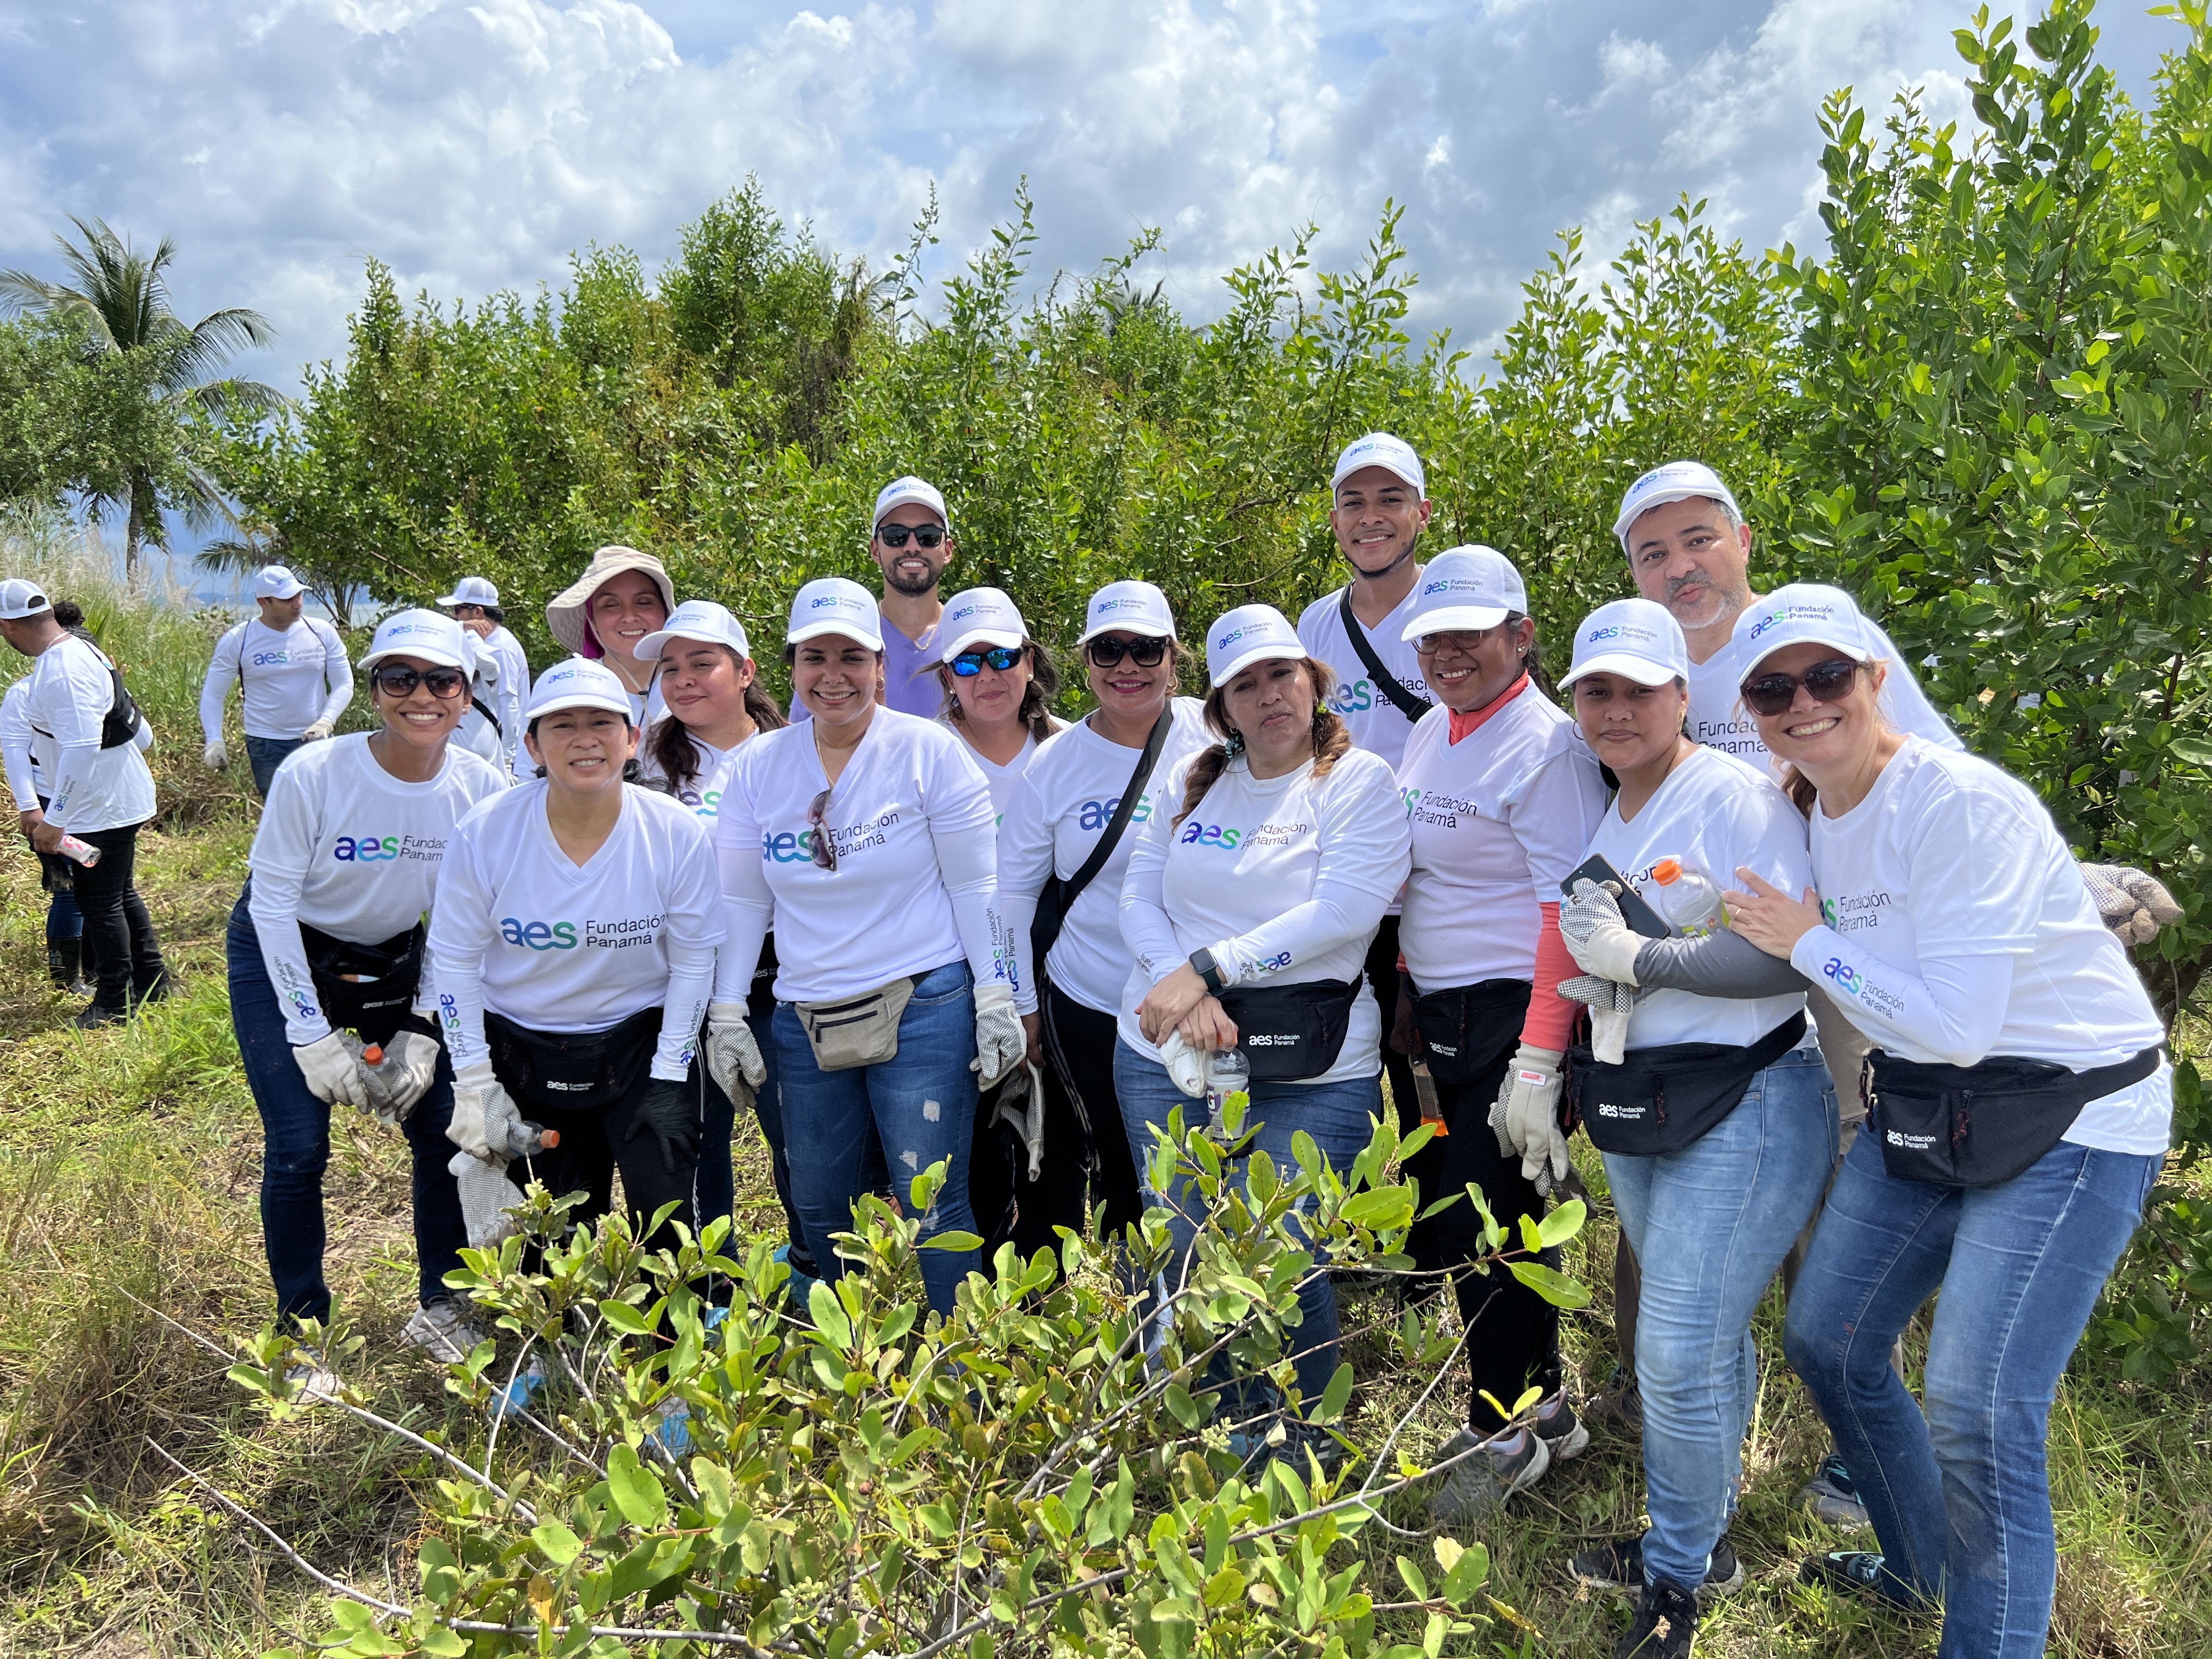 Voluntarios de la Fundación AES Panamá en la jornada de reforestación de Isla Galeta